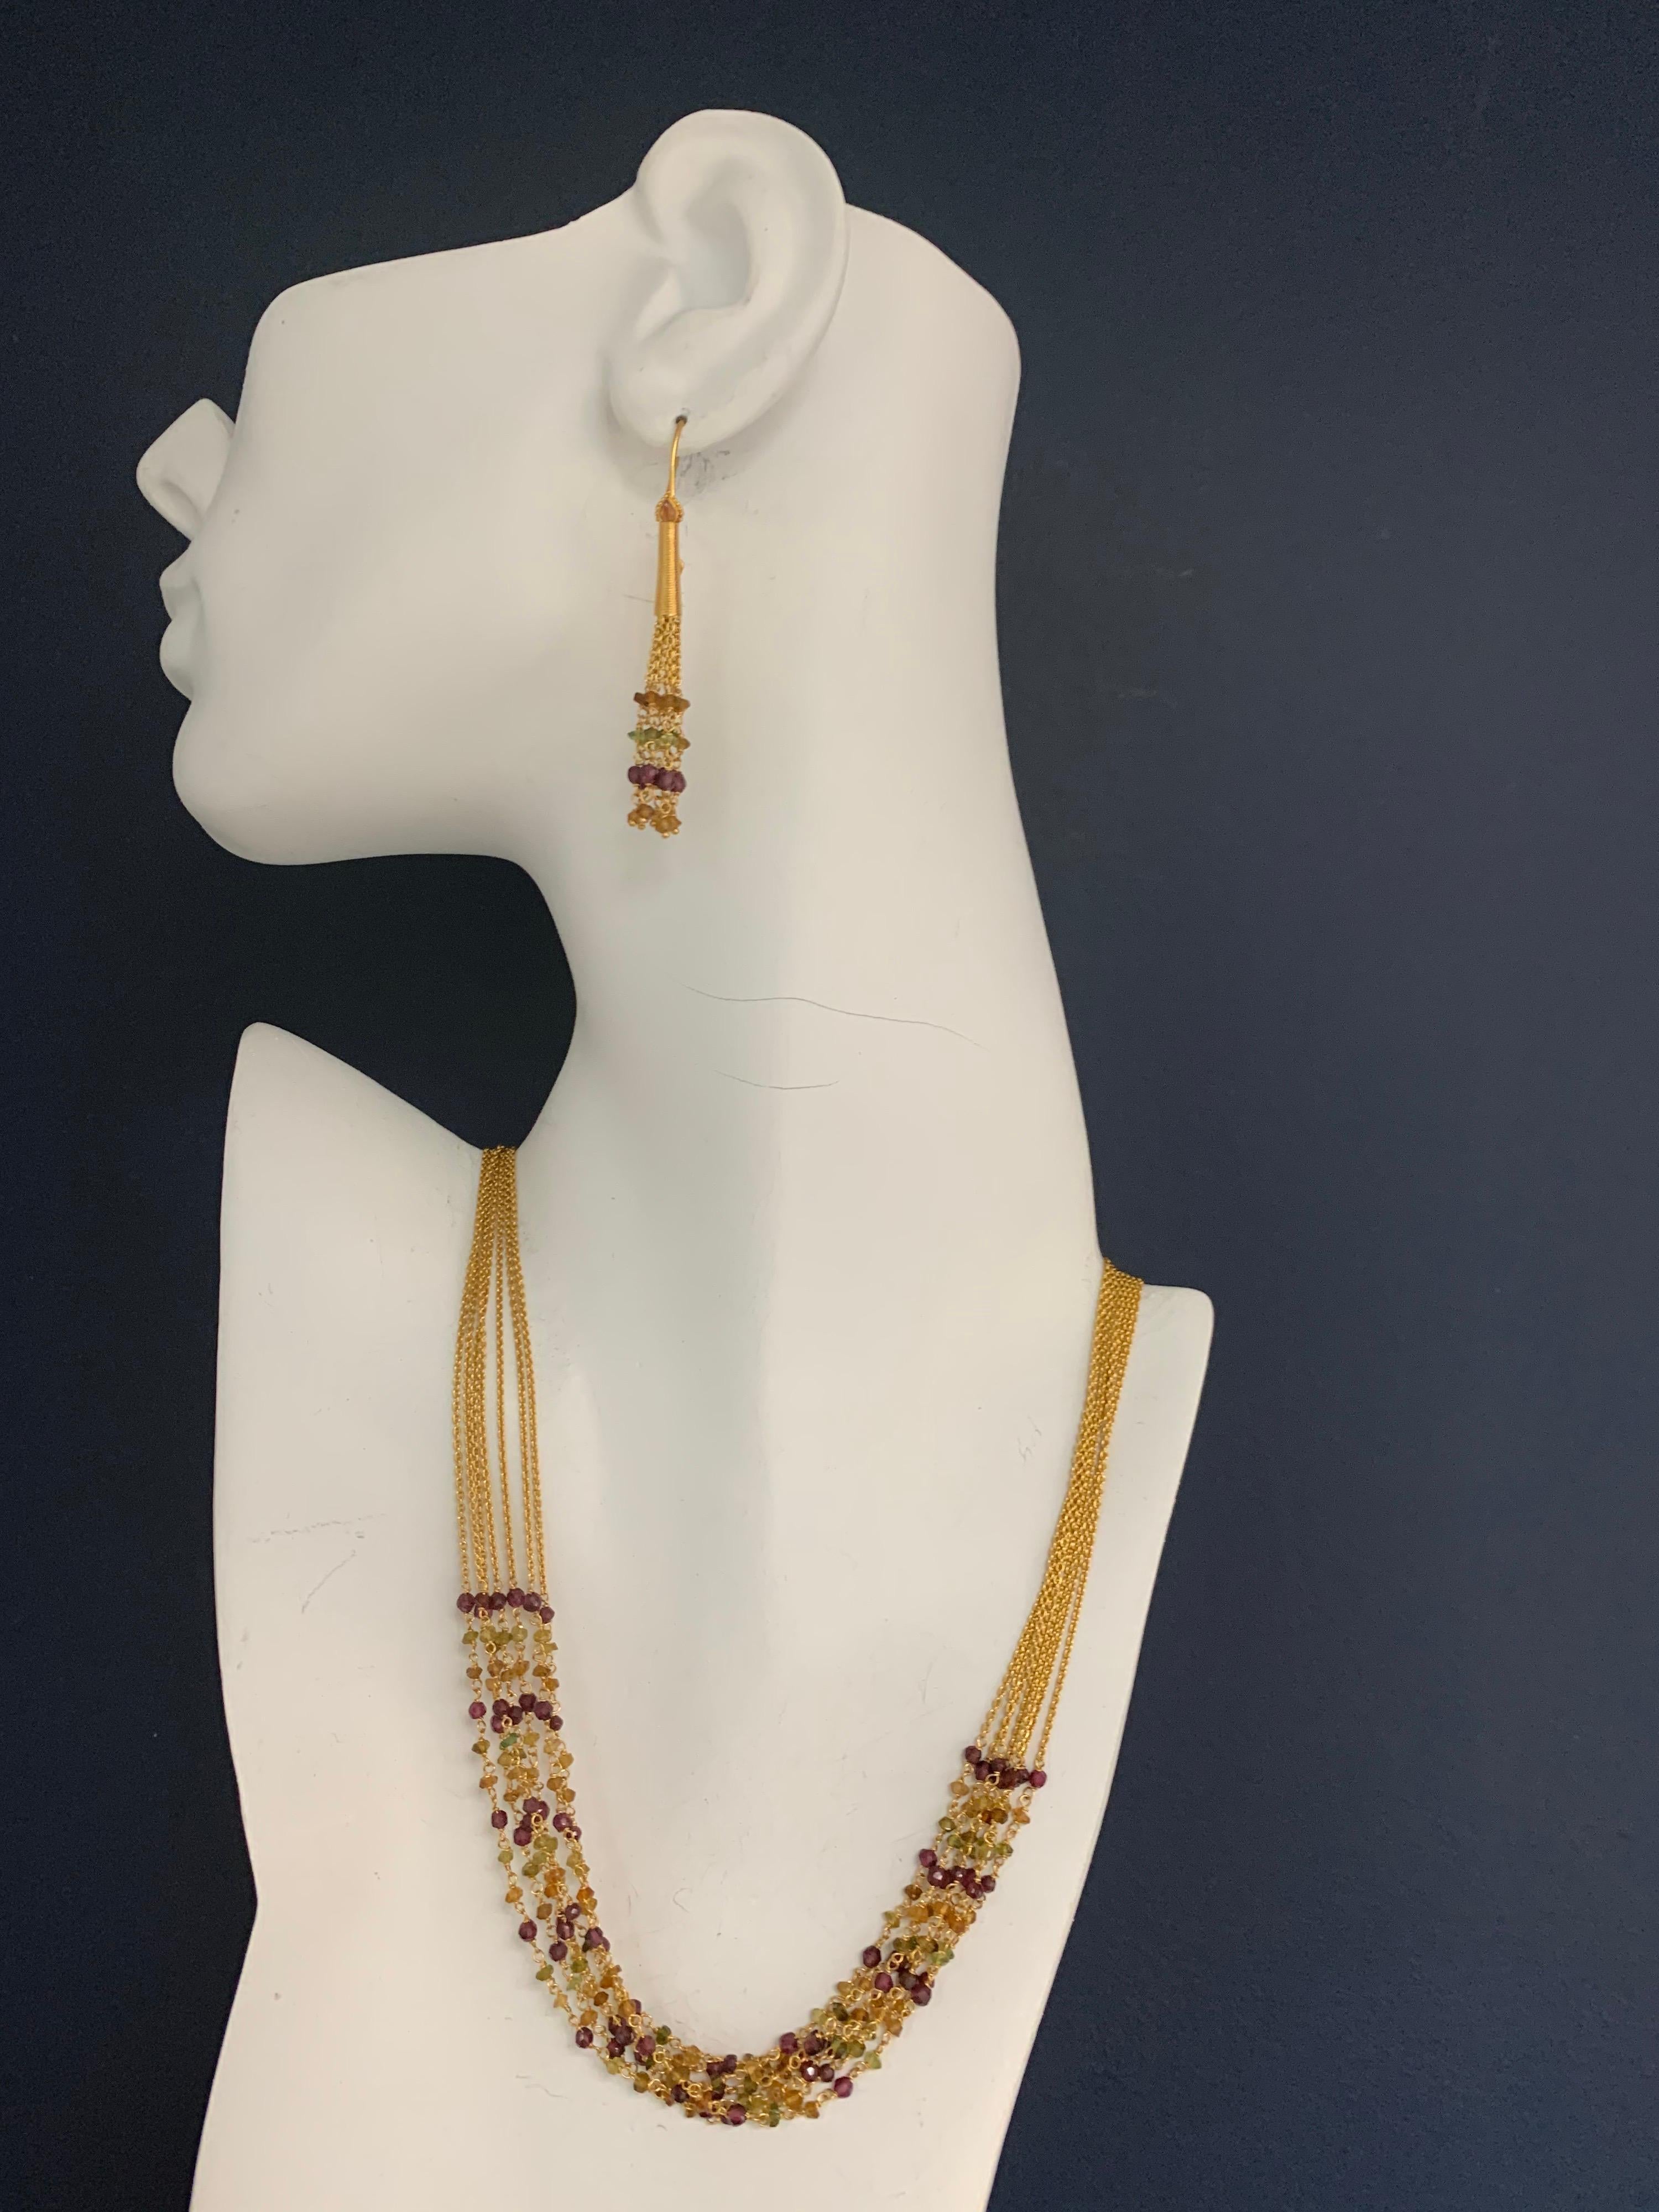 Ensemble de colliers et de boucles d'oreilles modernes en or 22k de Tanishq avec grenat de couleur Nature. 

Le collier est ajustable de 16 à 18 pouces et pèse 24,48 grammes.
Les boucles d'oreilles mesurent 2 pouces de long et pèsent 6,83